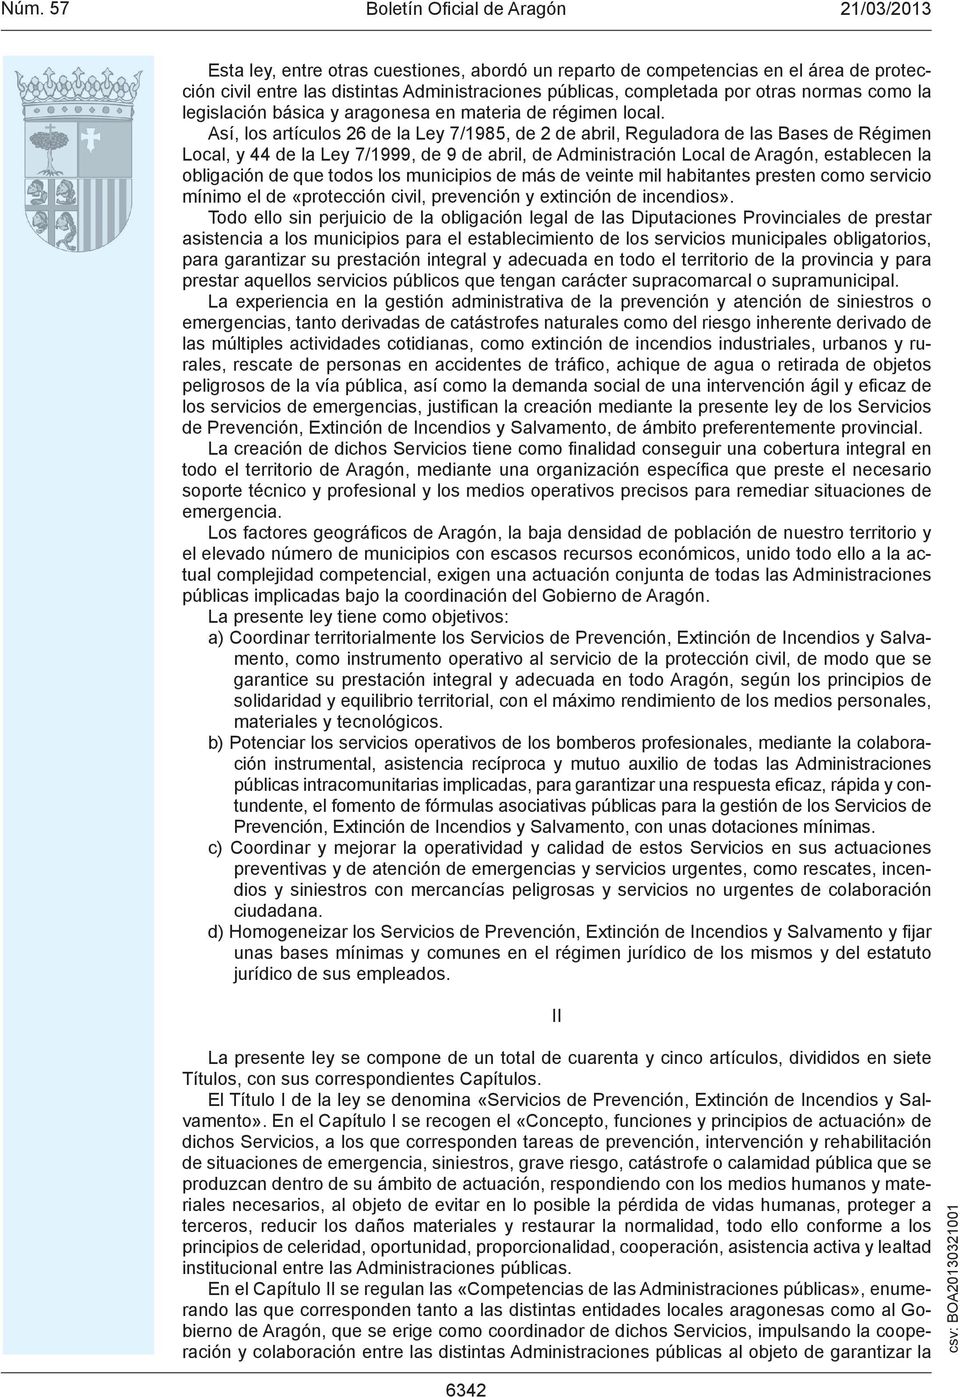 Así, los artículos 26 de la Ley 7/1985, de 2 de abril, Reguladora de las Bases de Régimen Local, y 44 de la Ley 7/1999, de 9 de abril, de Administración Local de Aragón, establecen la obligación de